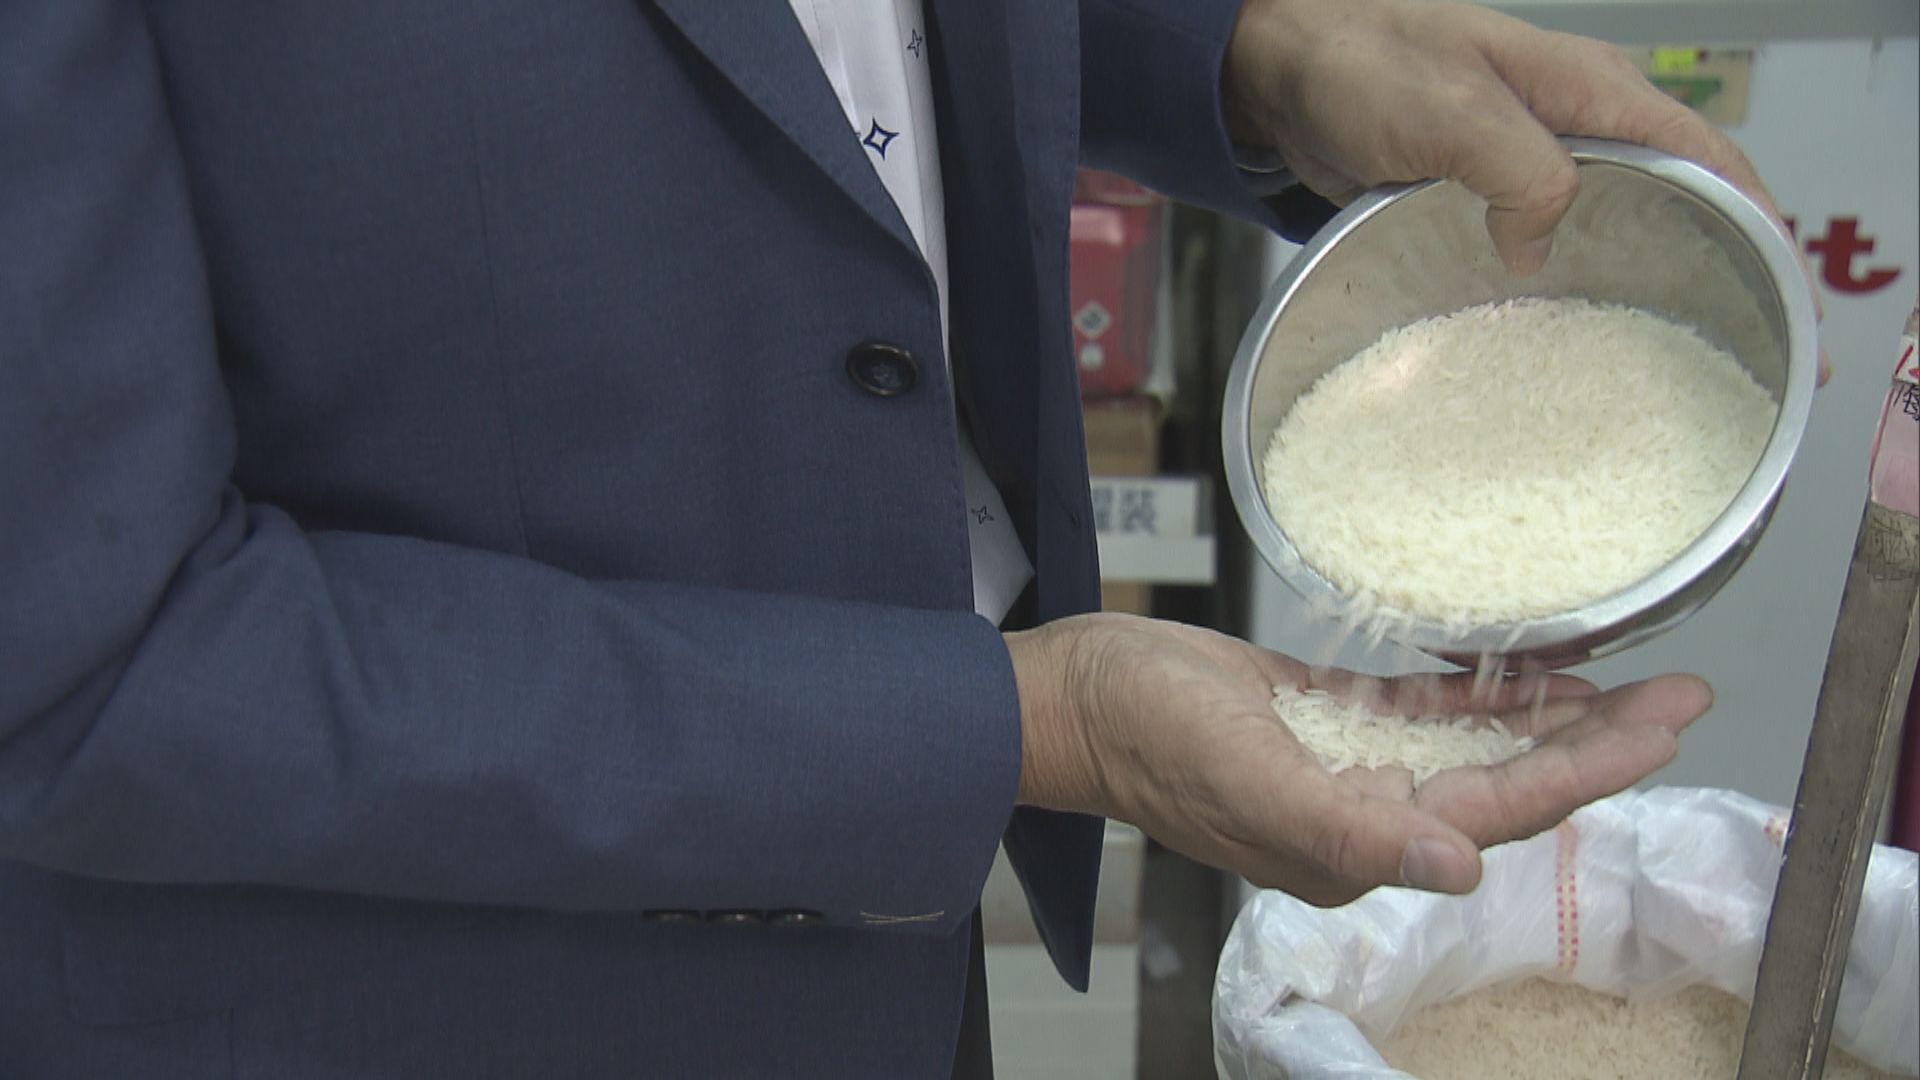 泰國及越南食米或加價 酒樓：如升一倍或會轉嫁消費者